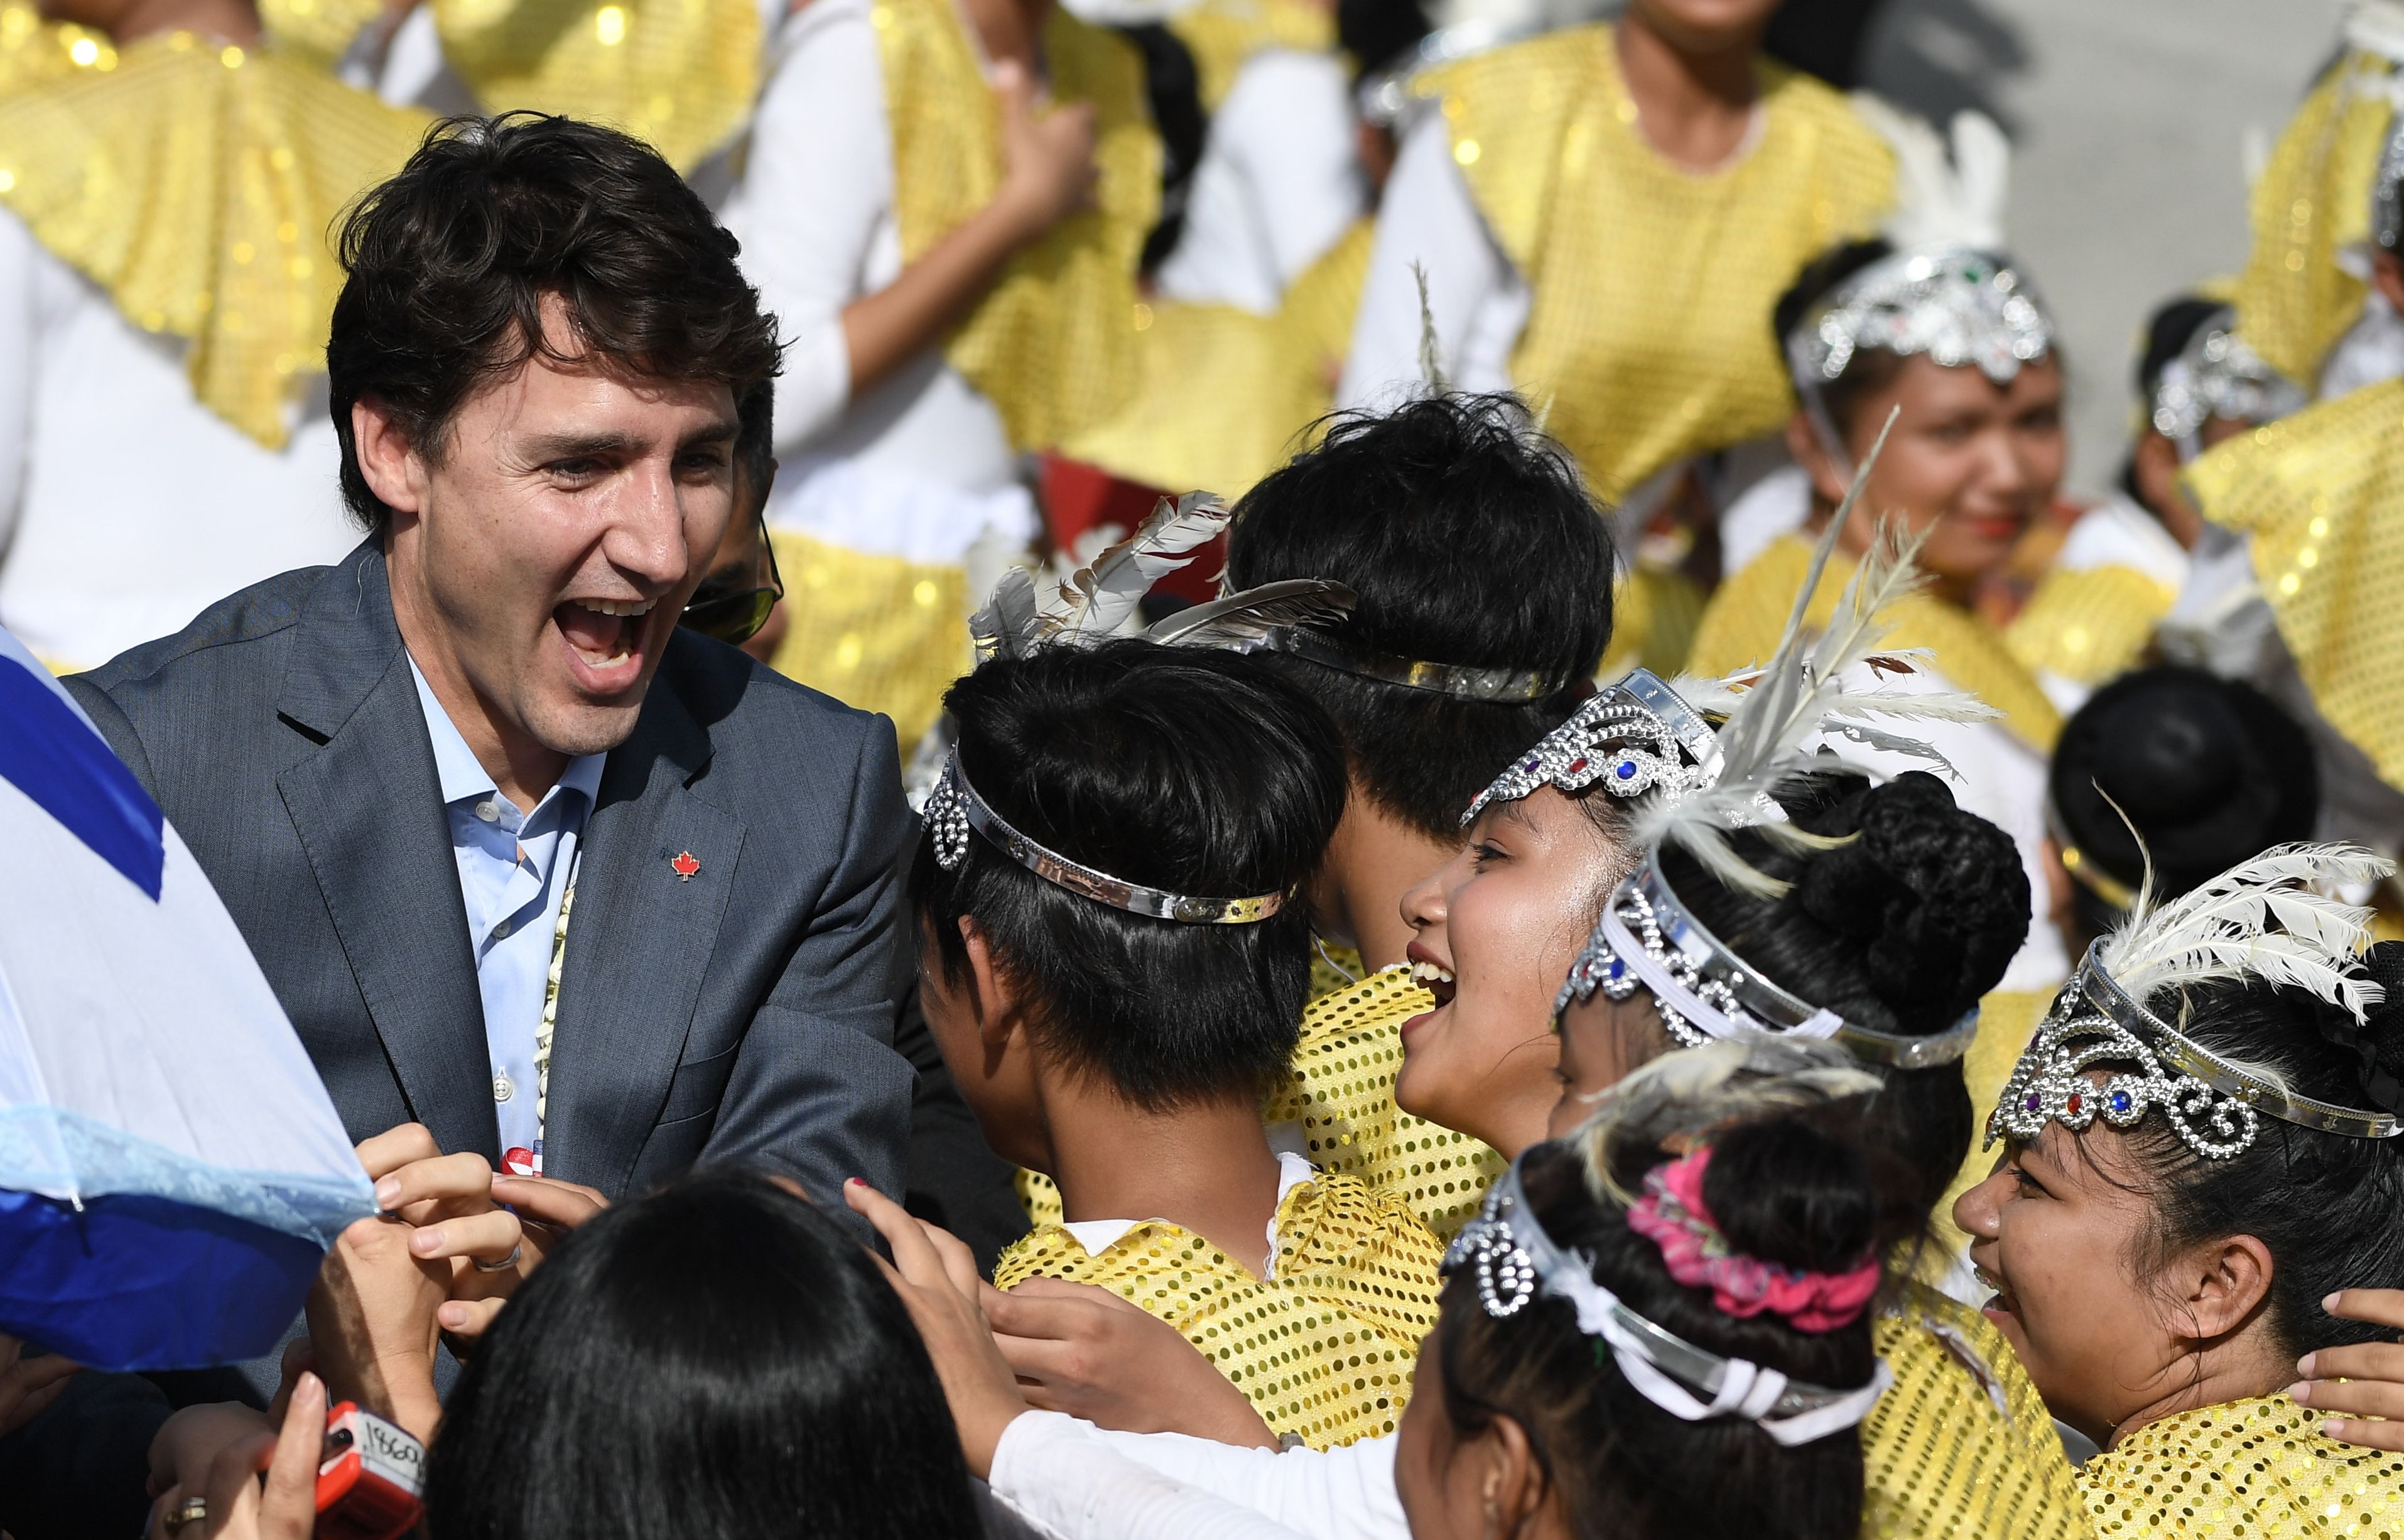 رئيس وزراء كندا يتفاعل مع احتفالات الاستقبال فى الفلبين